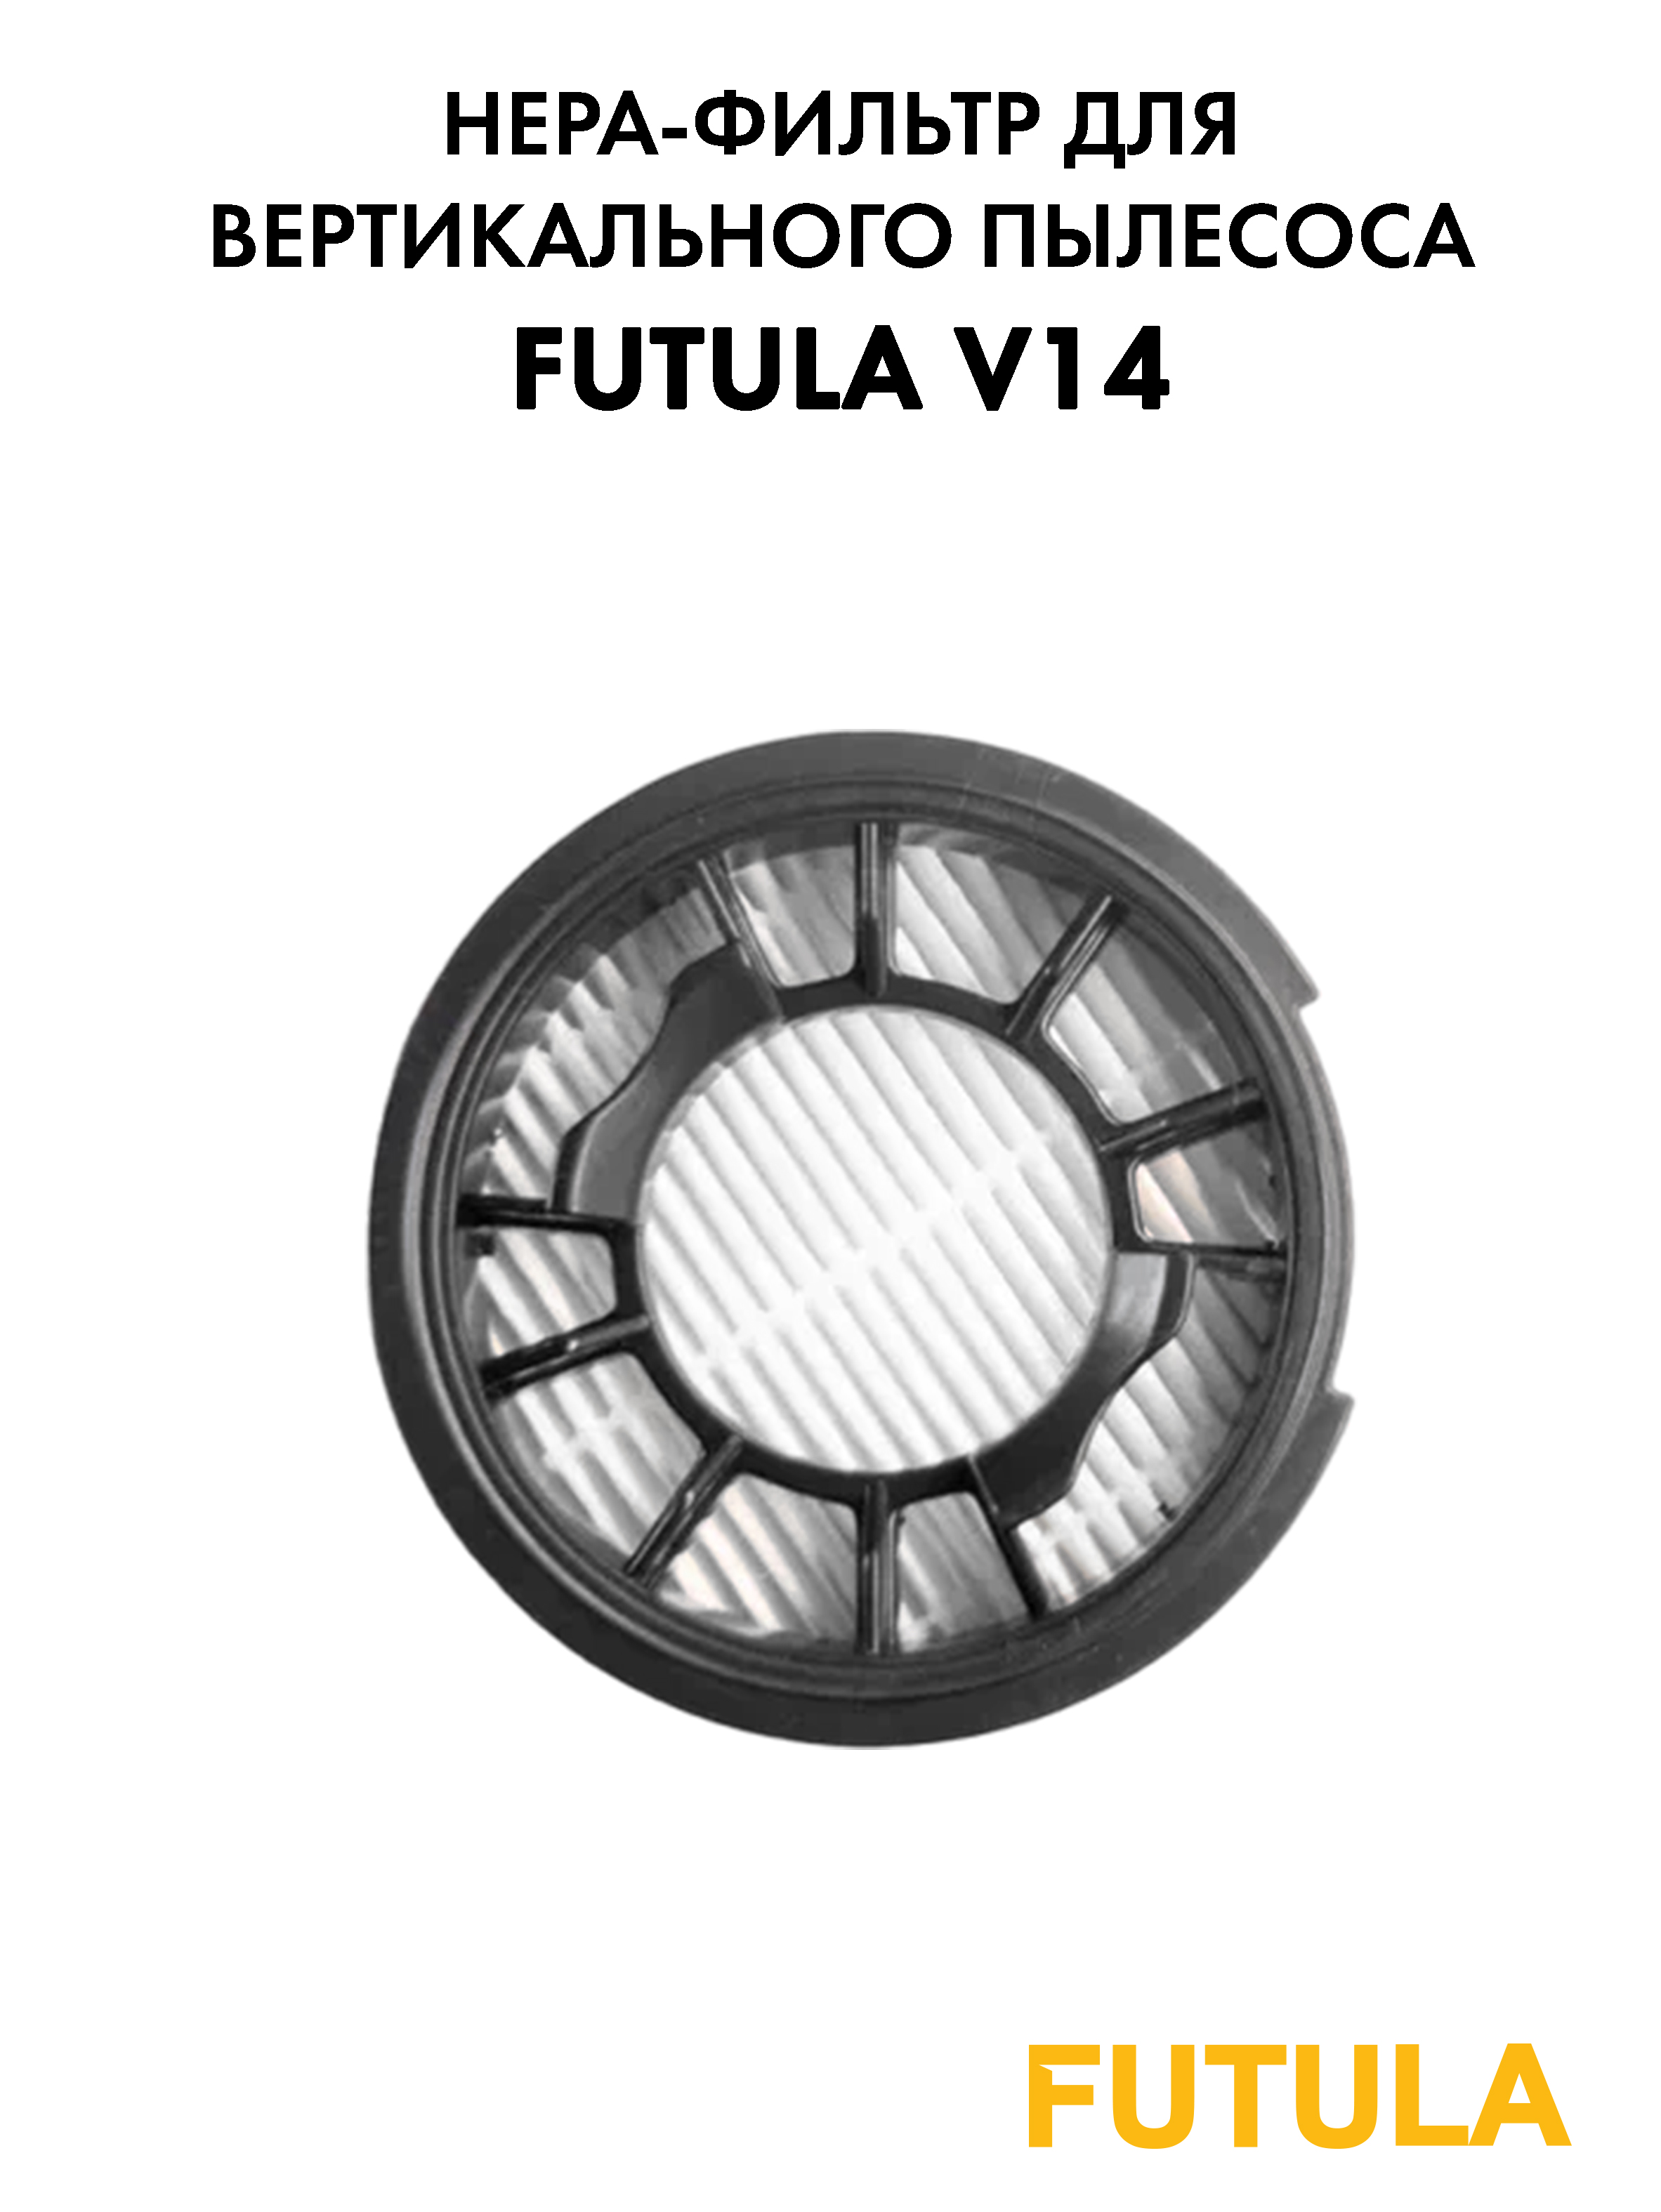 Фильтр для пылесоса Futula V14